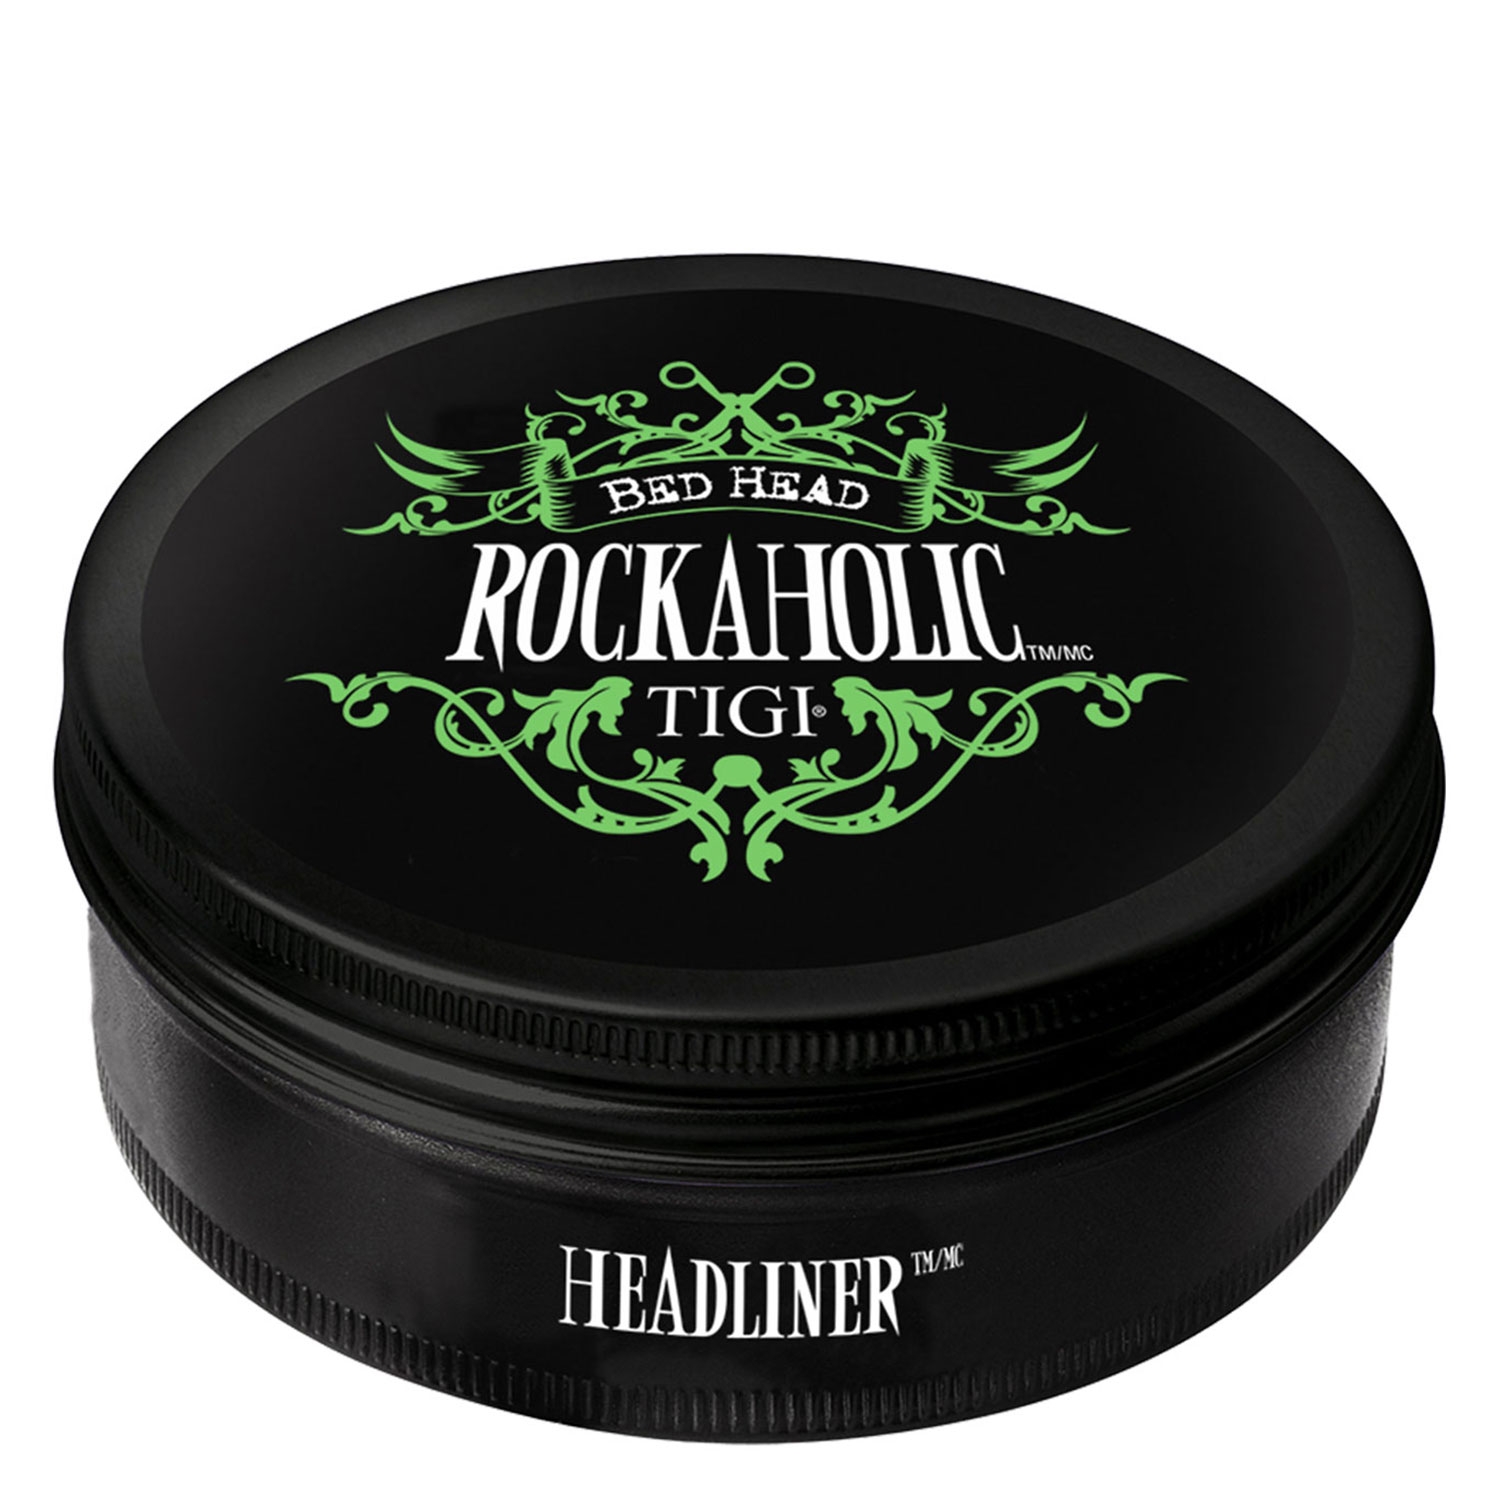 Produktbild von Bed Head Rockaholic - Headliner Styling Paste